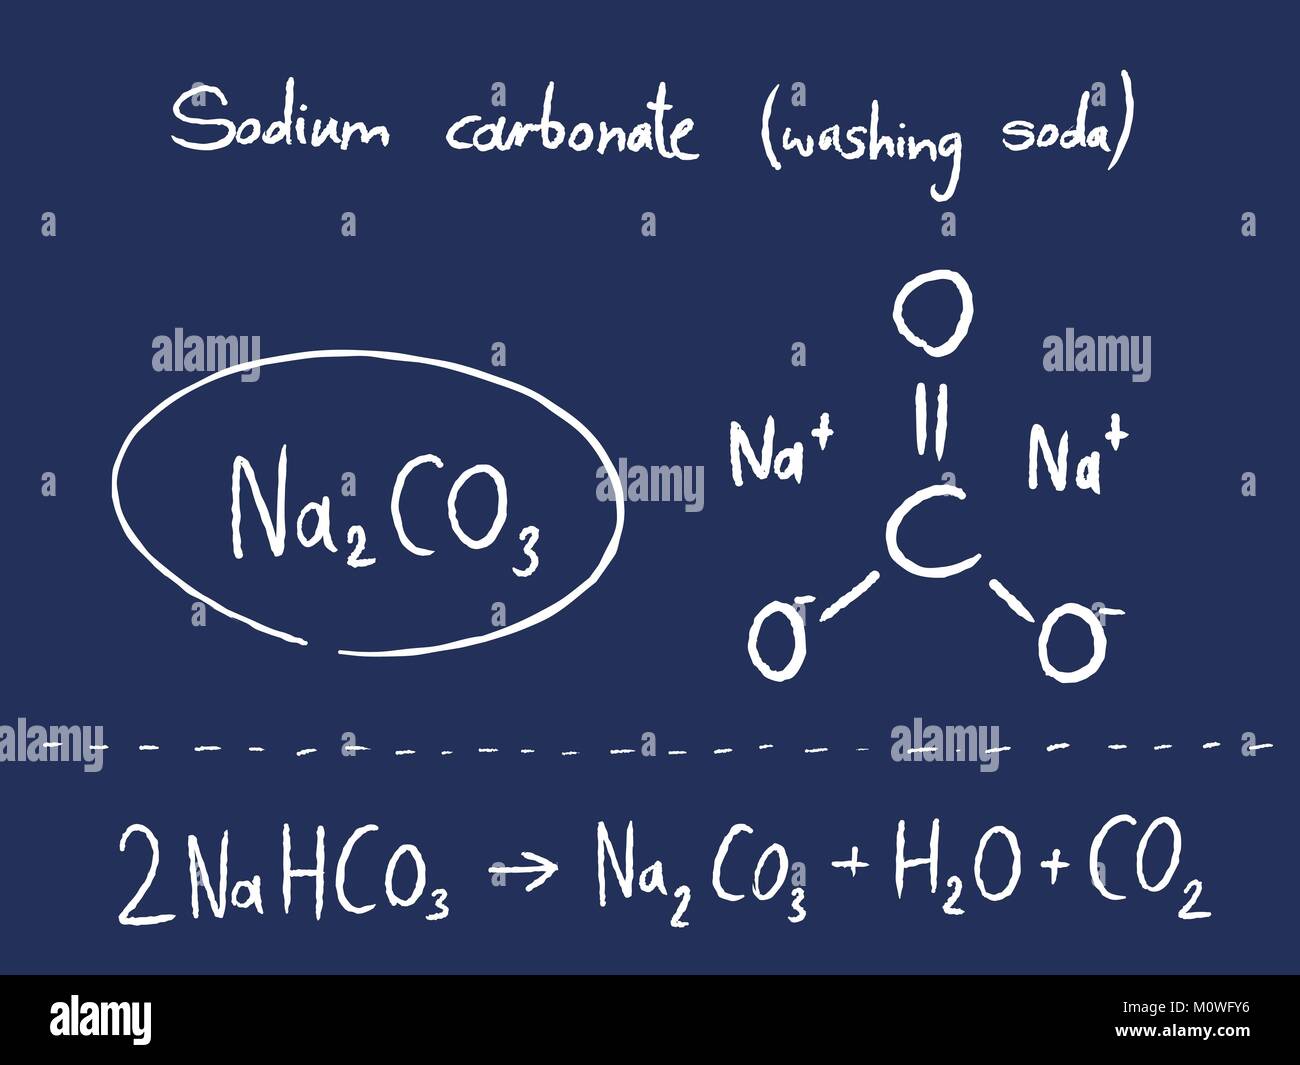 Carbonate de sodium (soude) - leçon de chimie. L'enseignement des sciences  Image Vectorielle Stock - Alamy